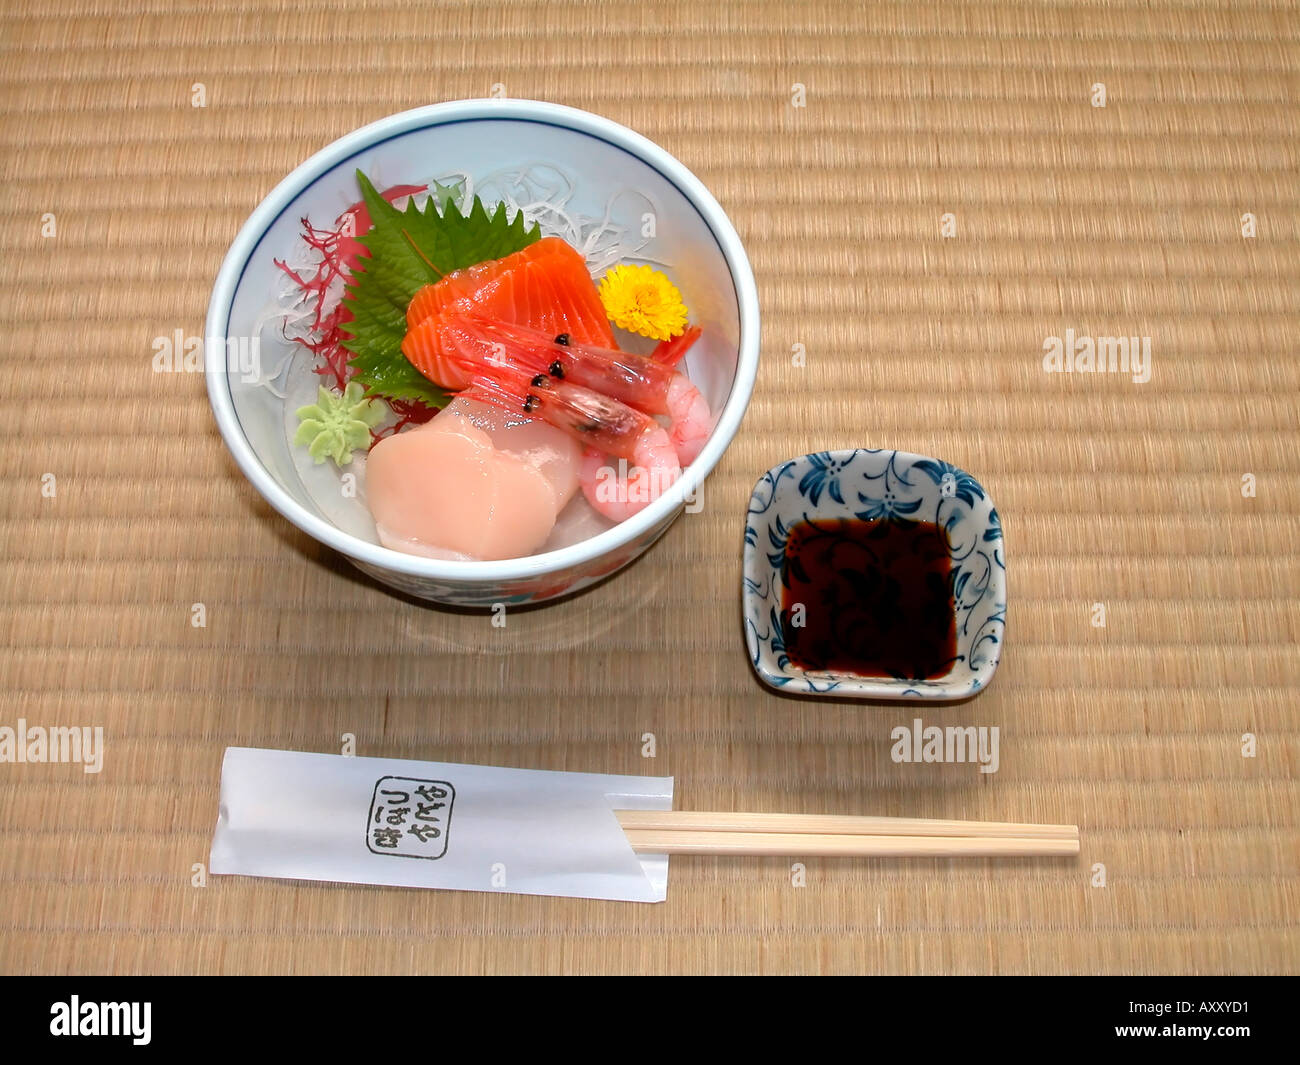 Sashimi giapponese fette di pesce crudo o frutti di mare su un letto di shredded daikon ravanello Foto Stock